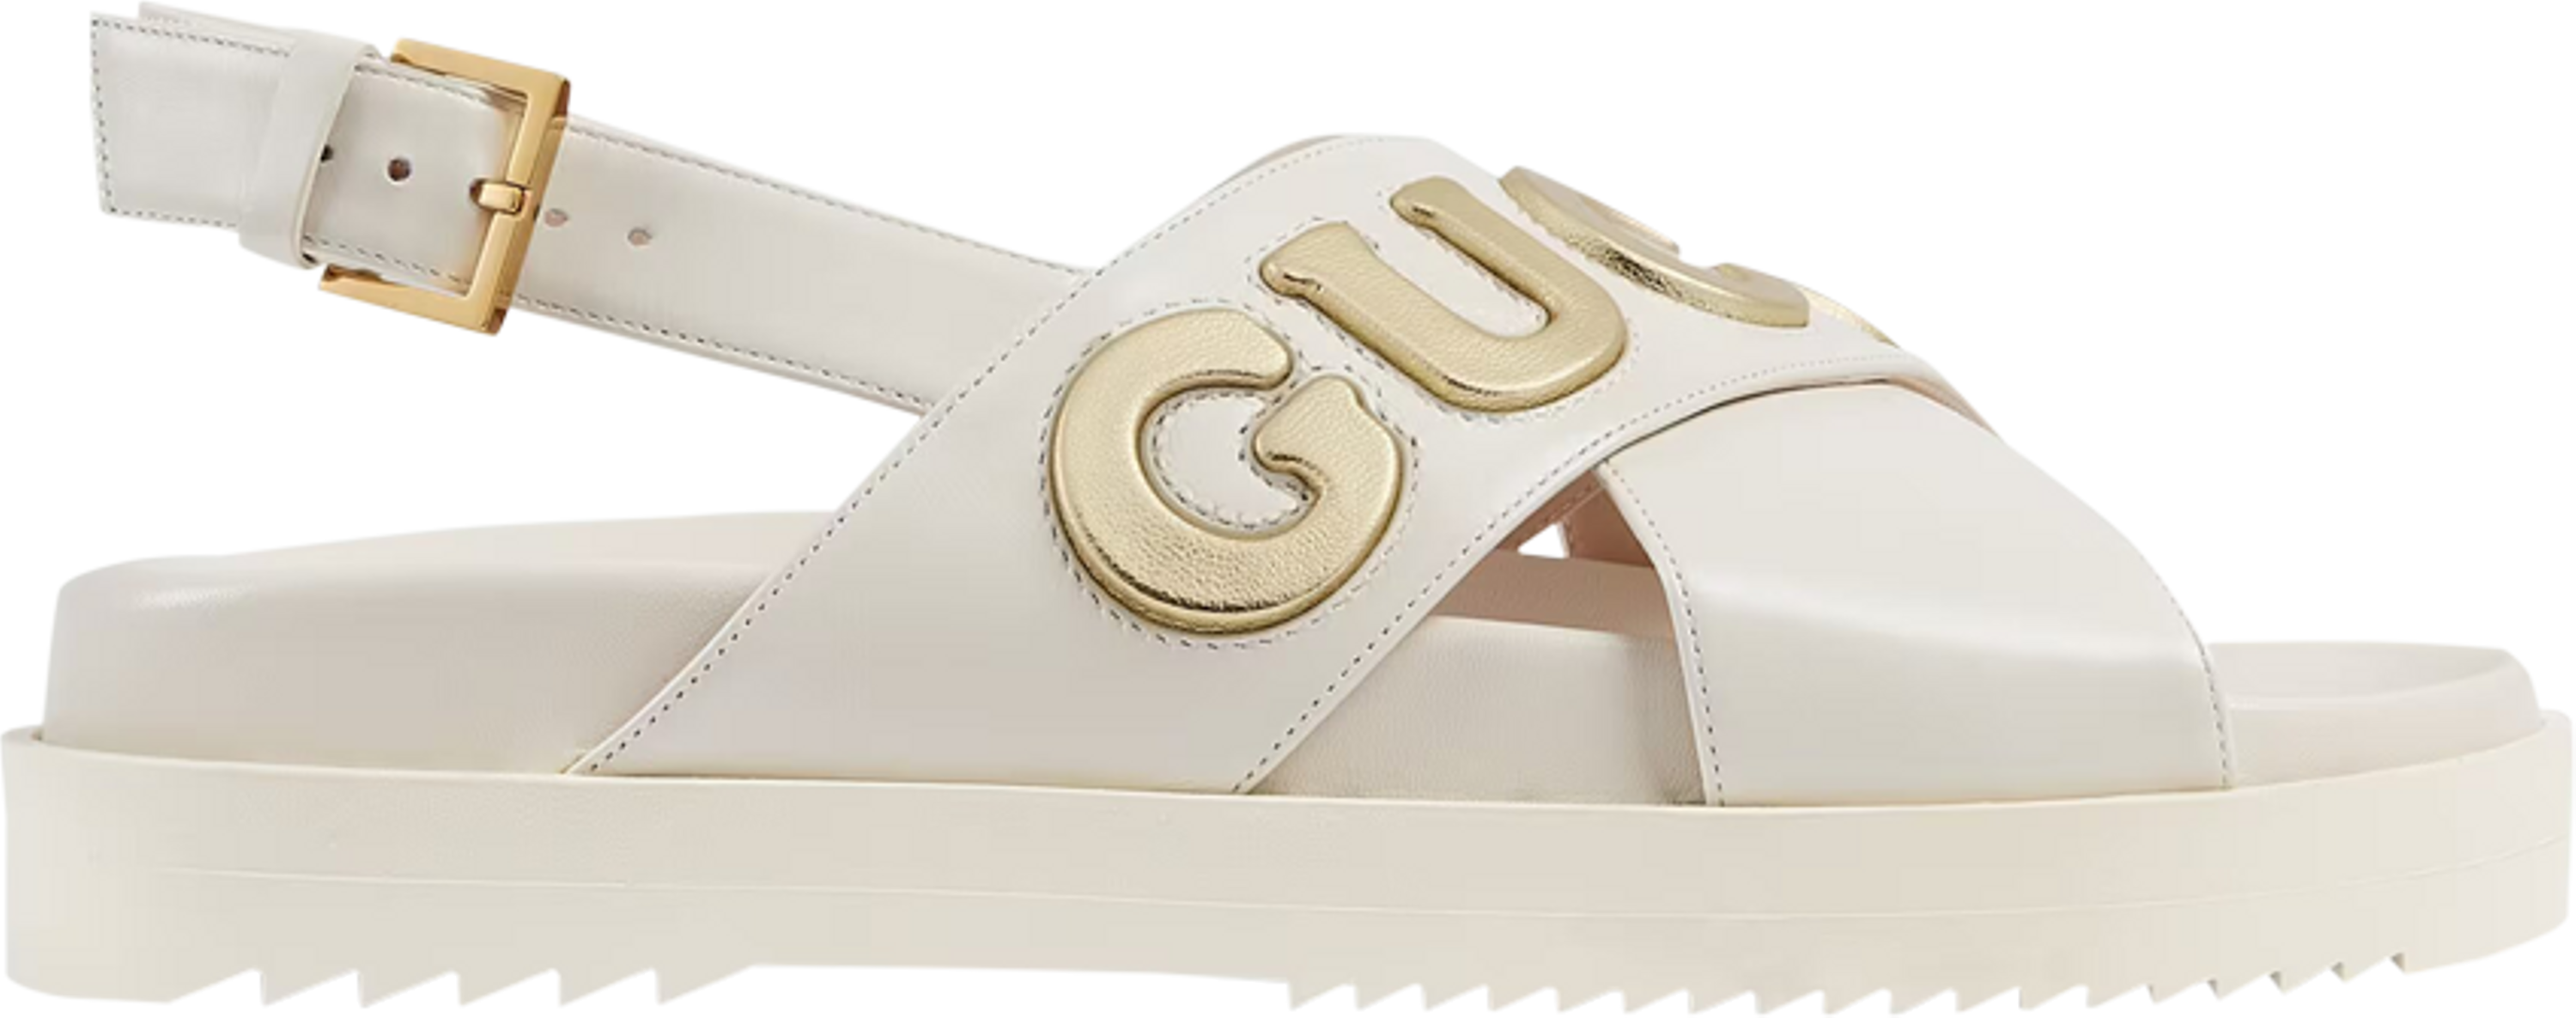 Buy Gucci Wmns Sandal 'White Metallic Gold' - 738691 AAB3K 9267 - White ...